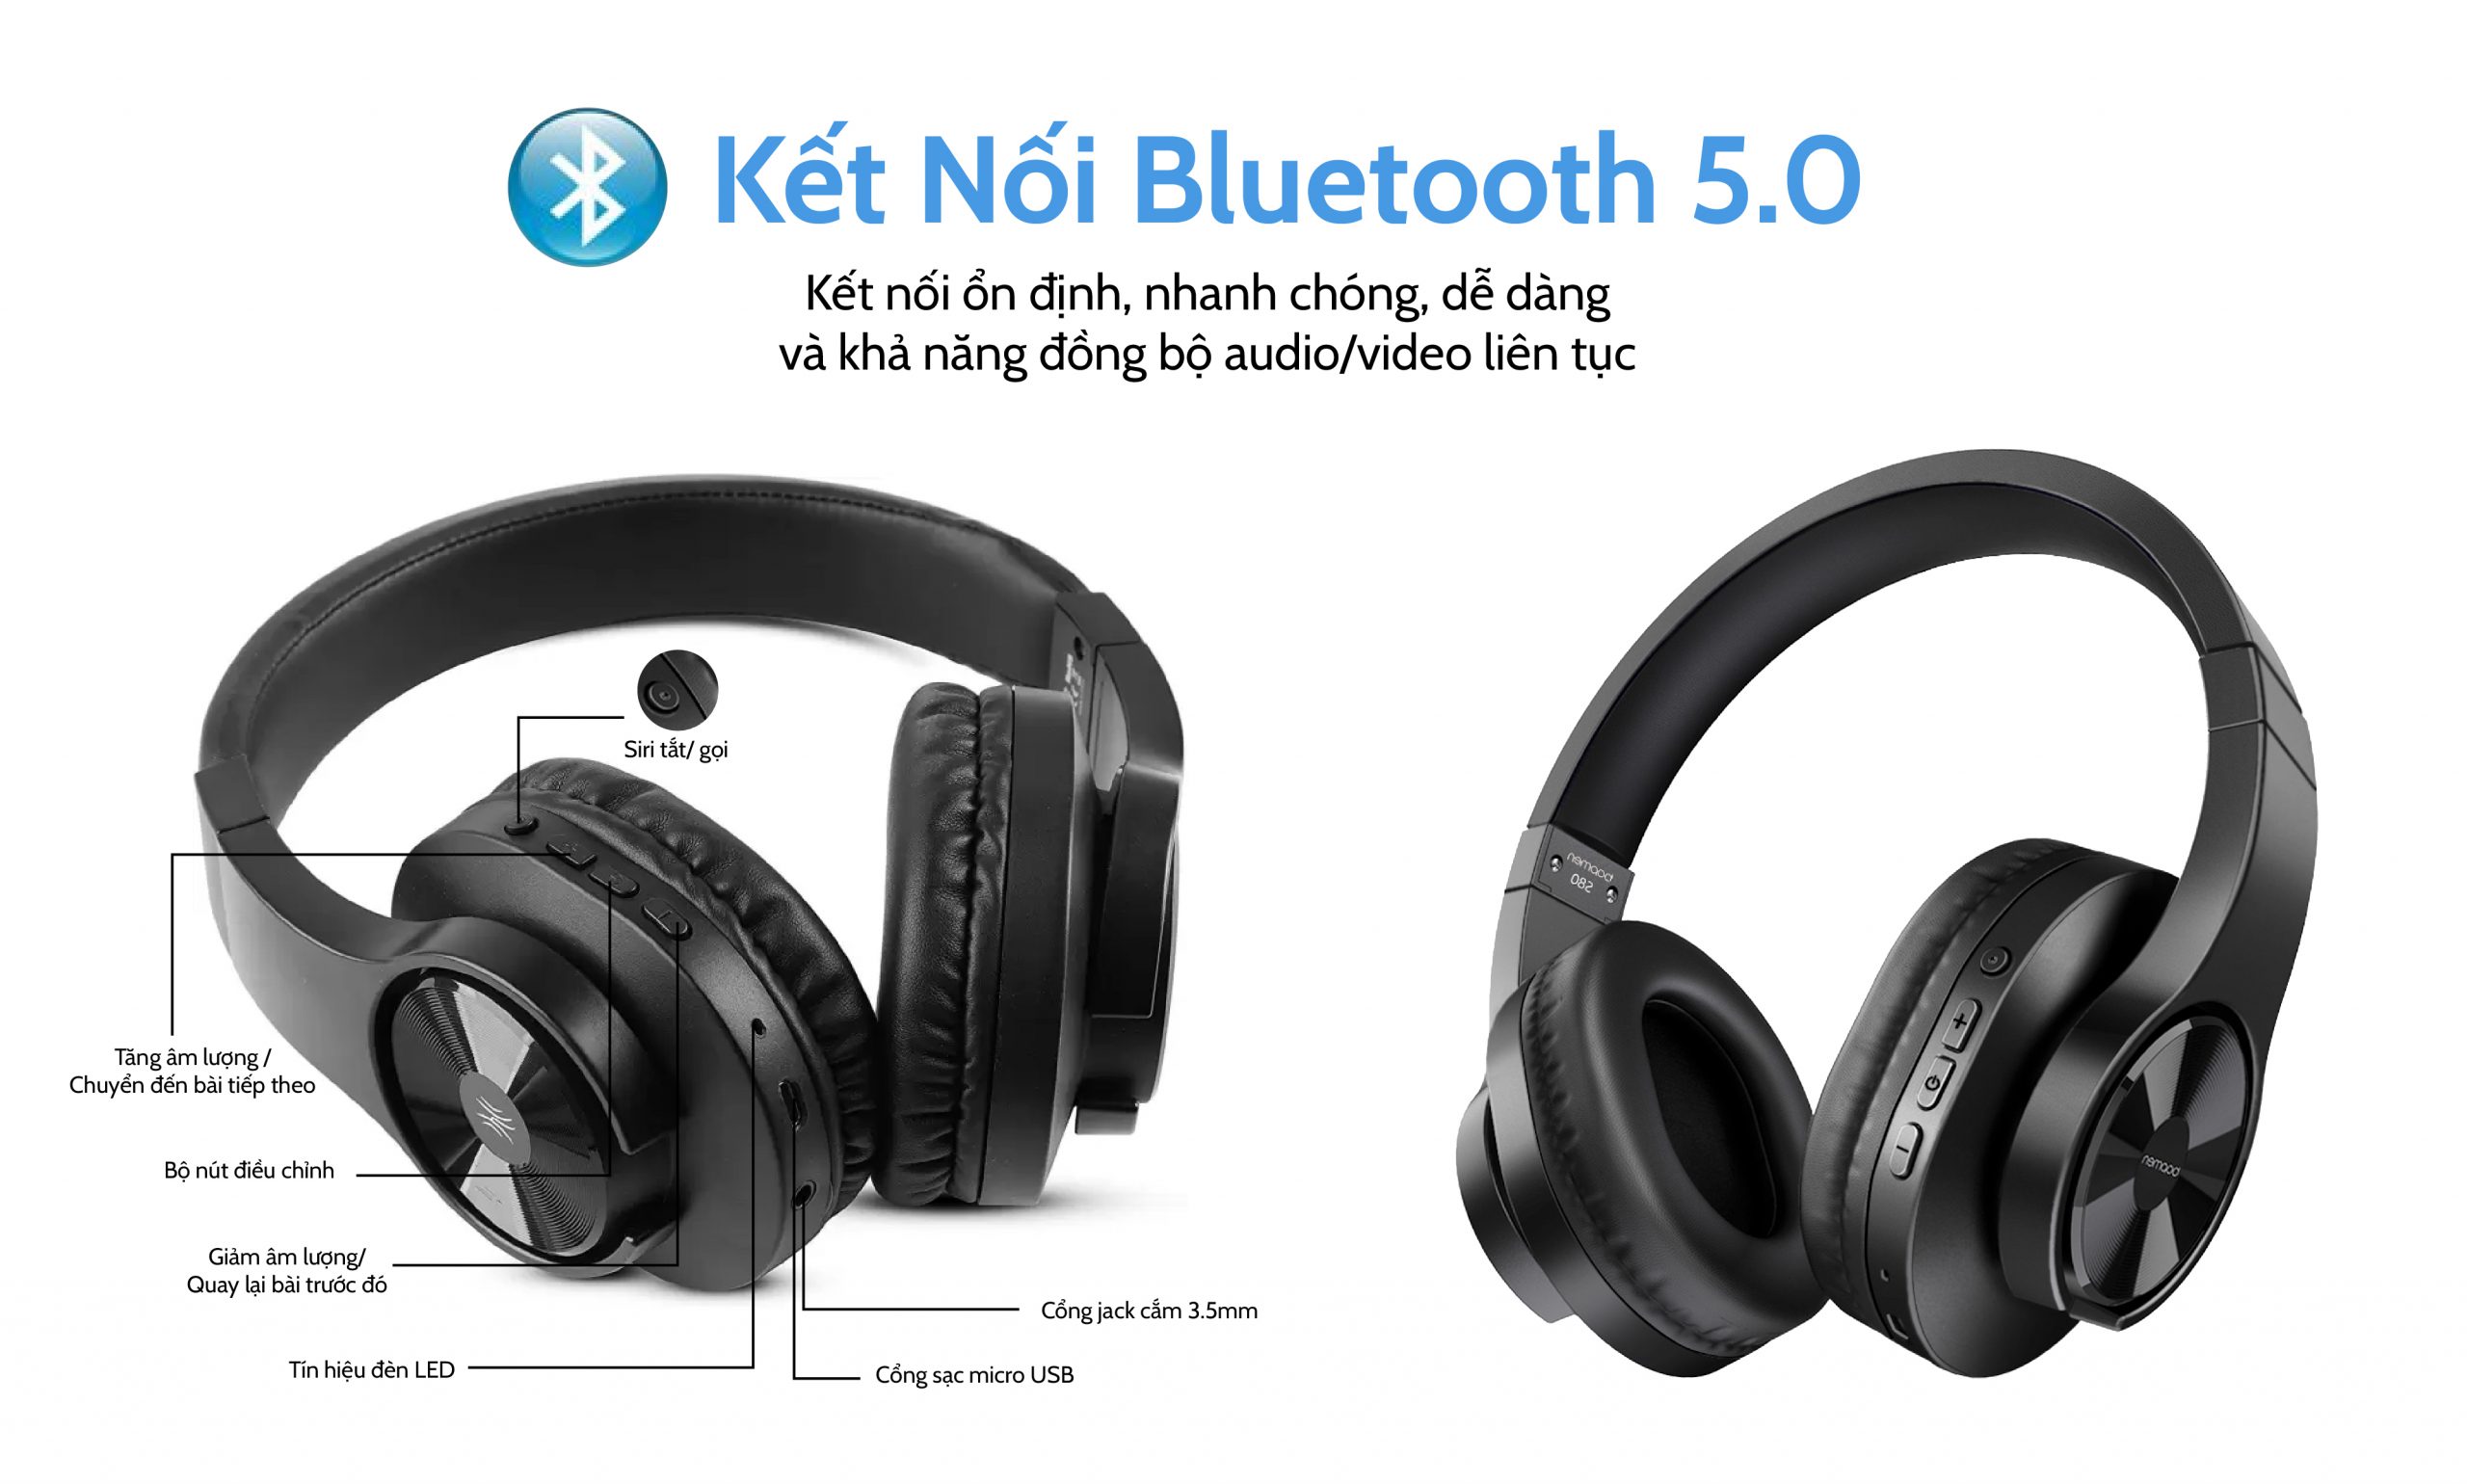 Tai Nghe Chụp Tai Bluetooth Dưới 1 Triệu Ngon Nhất 2023